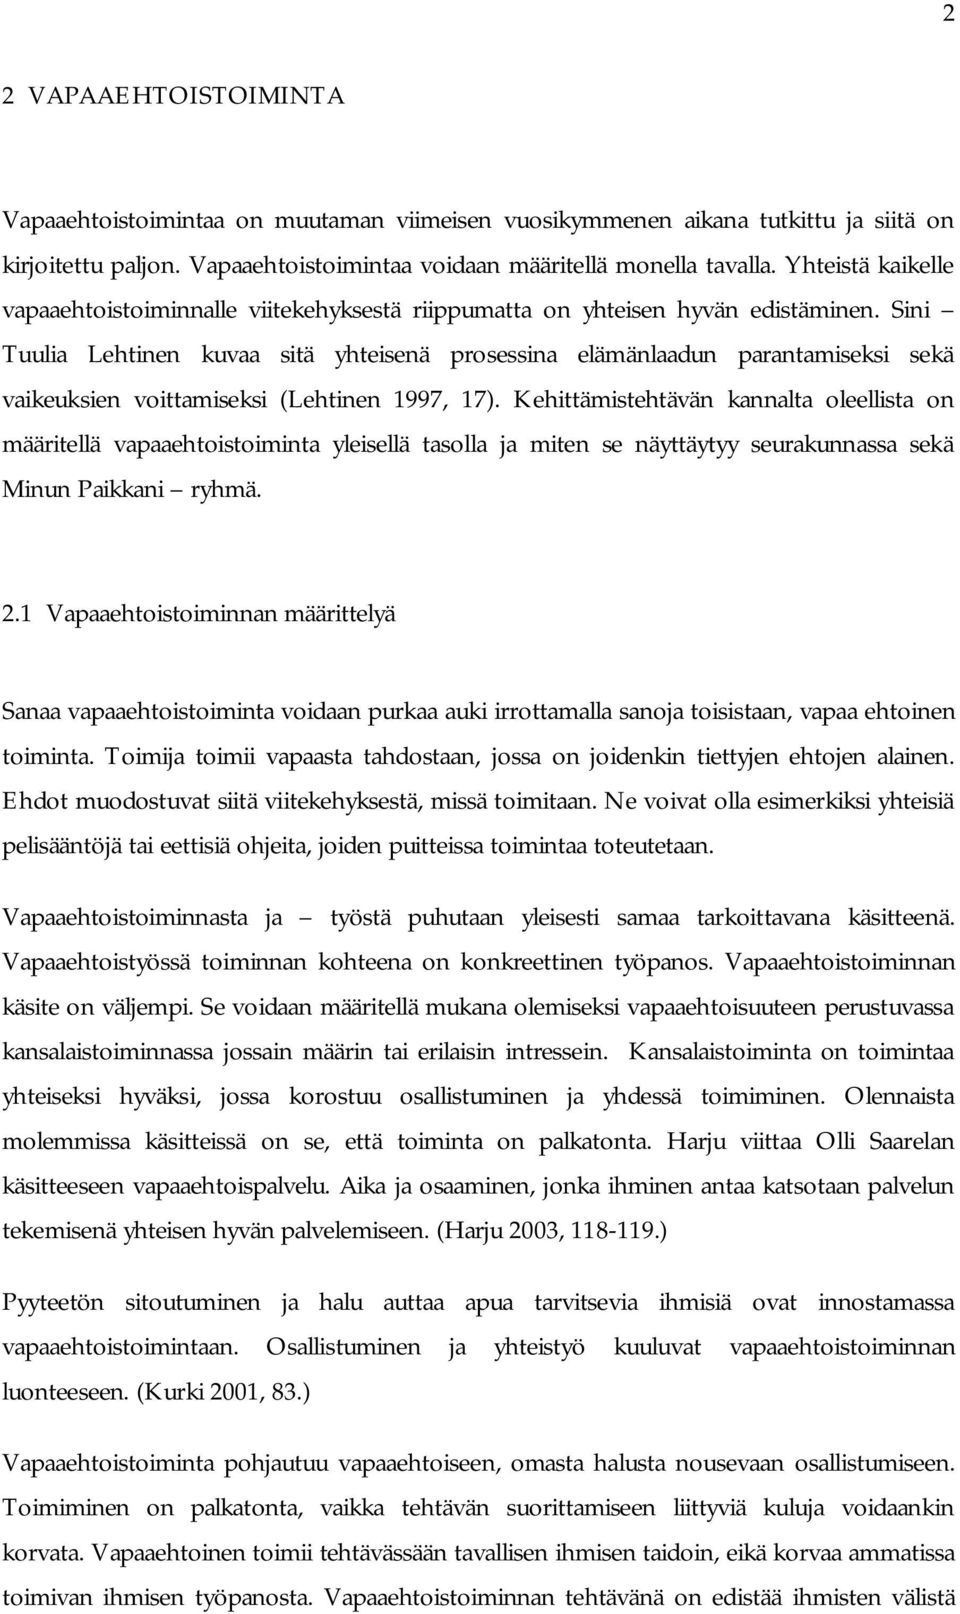 Sini Tuulia Lehtinen kuvaa sitä yhteisenä prosessina elämänlaadun parantamiseksi sekä vaikeuksien voittamiseksi (Lehtinen 1997, 17).